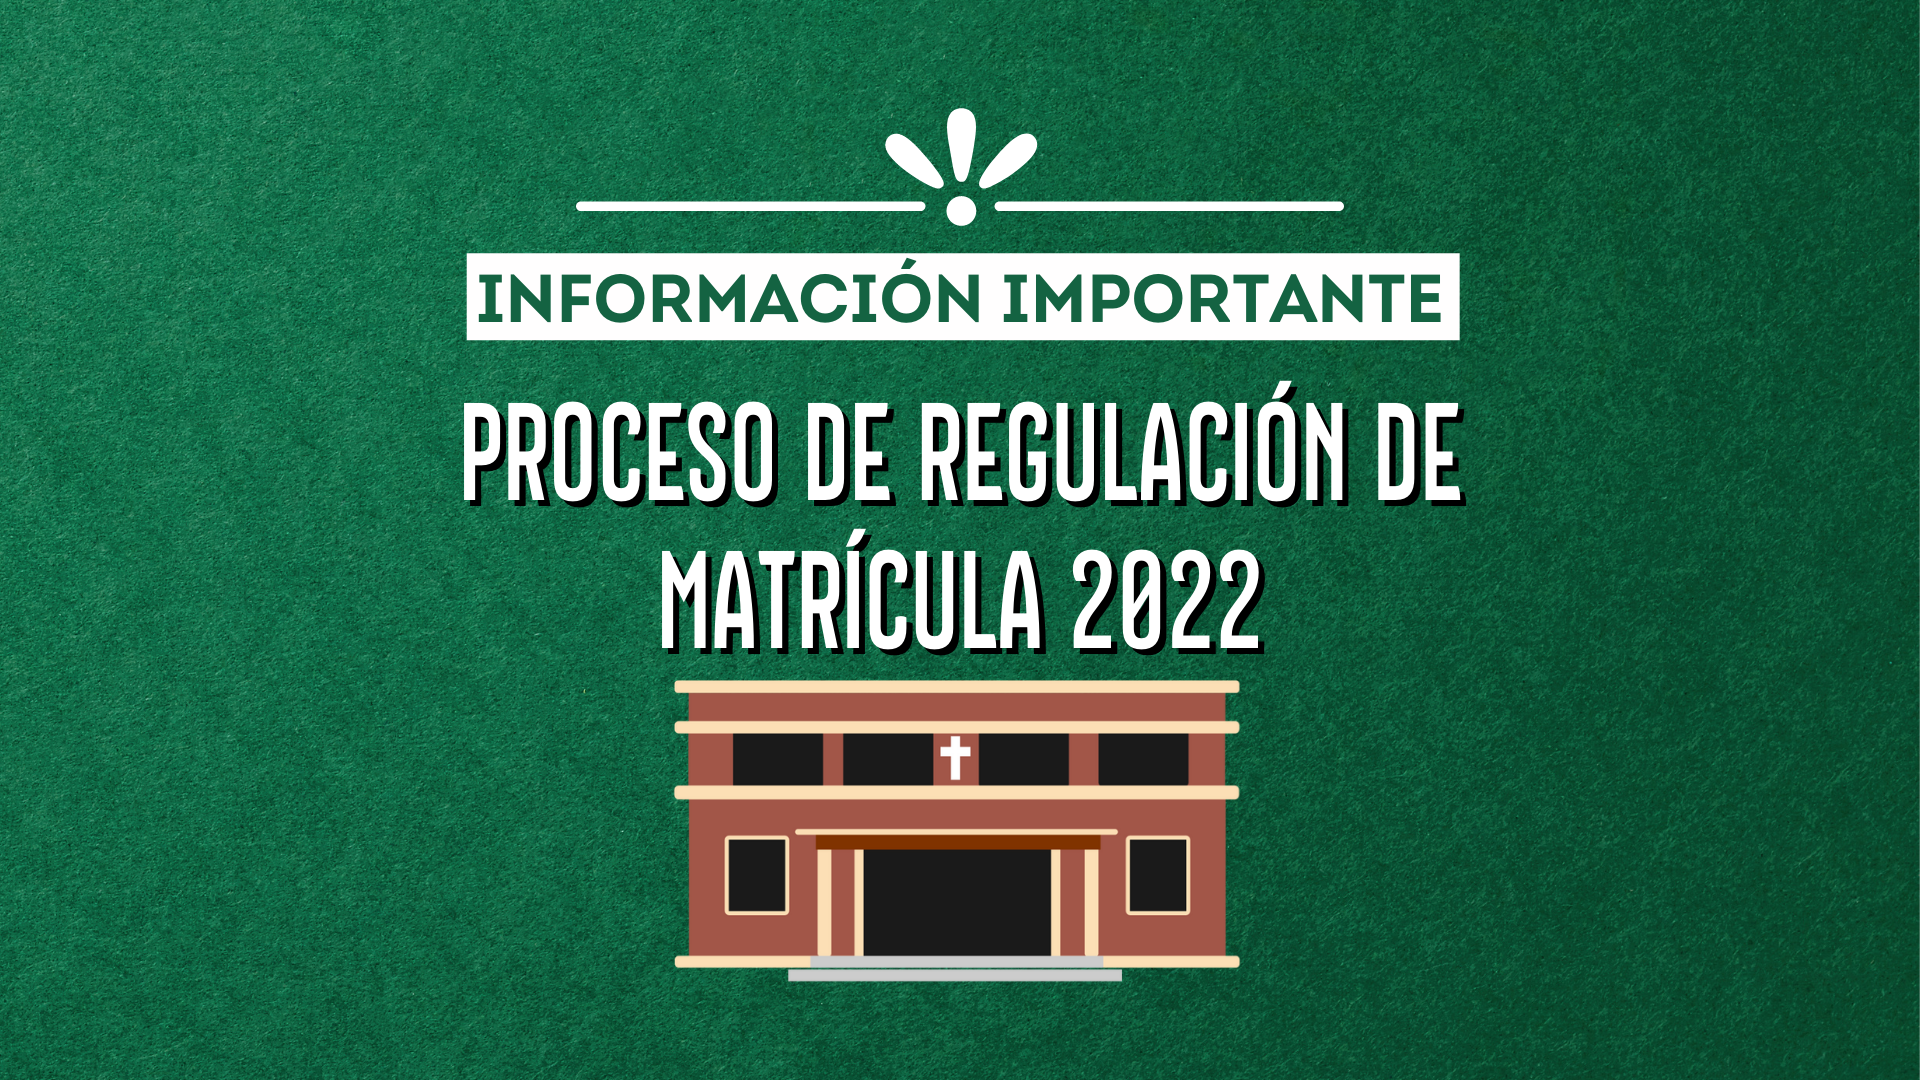 PROCESO DE REGULACIÓN DE MATRÍCULA 2022